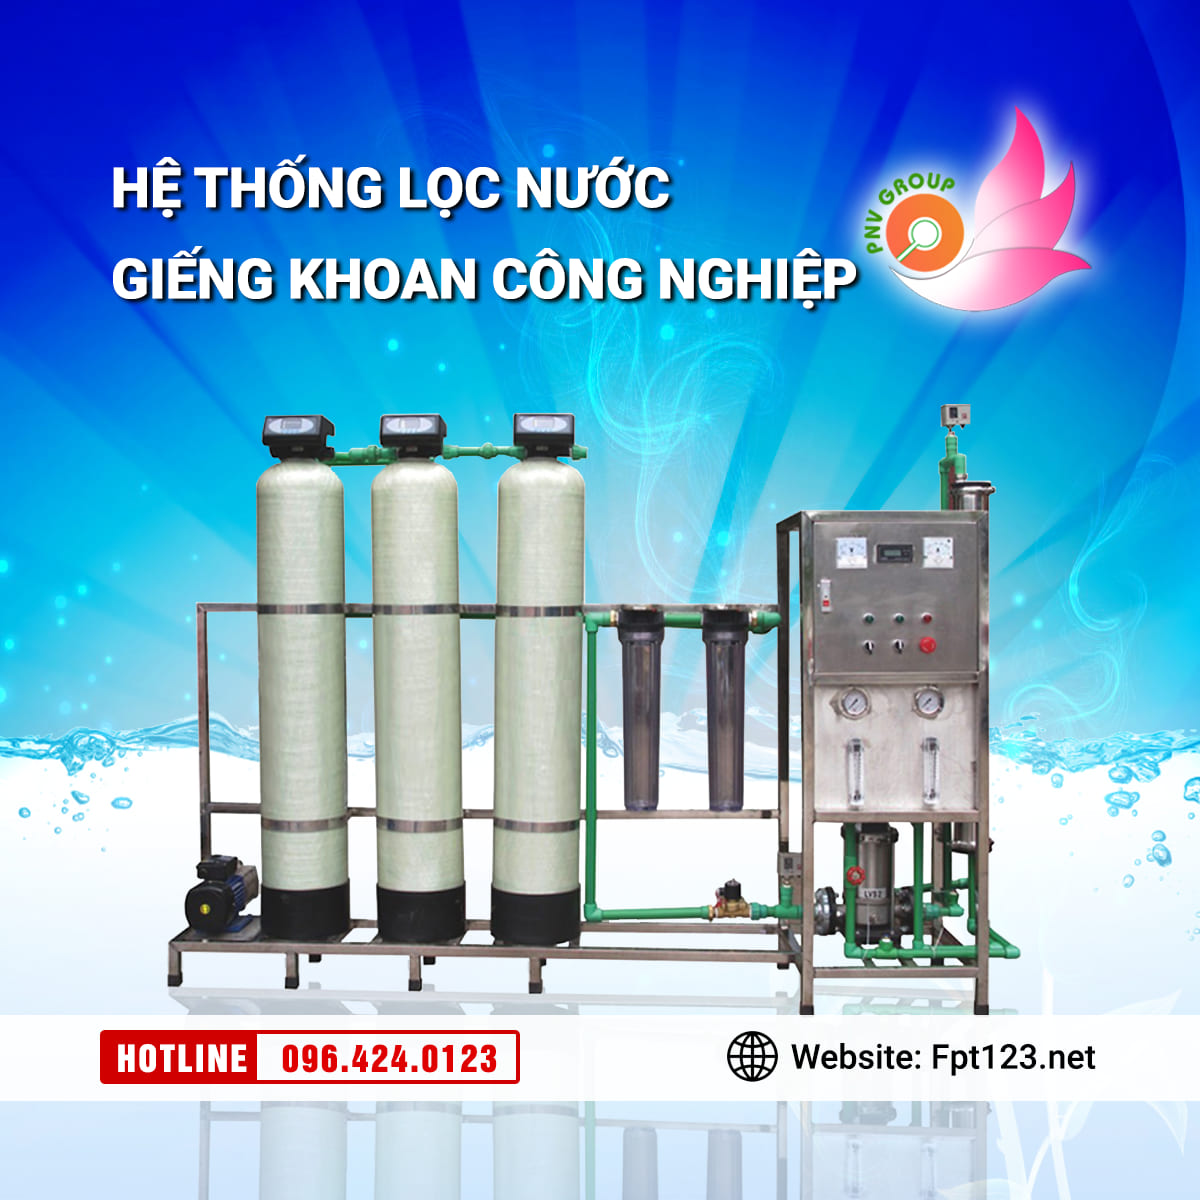 Lắp đặt hệ thống lọc nước giếng khoan tại Bắc Giang